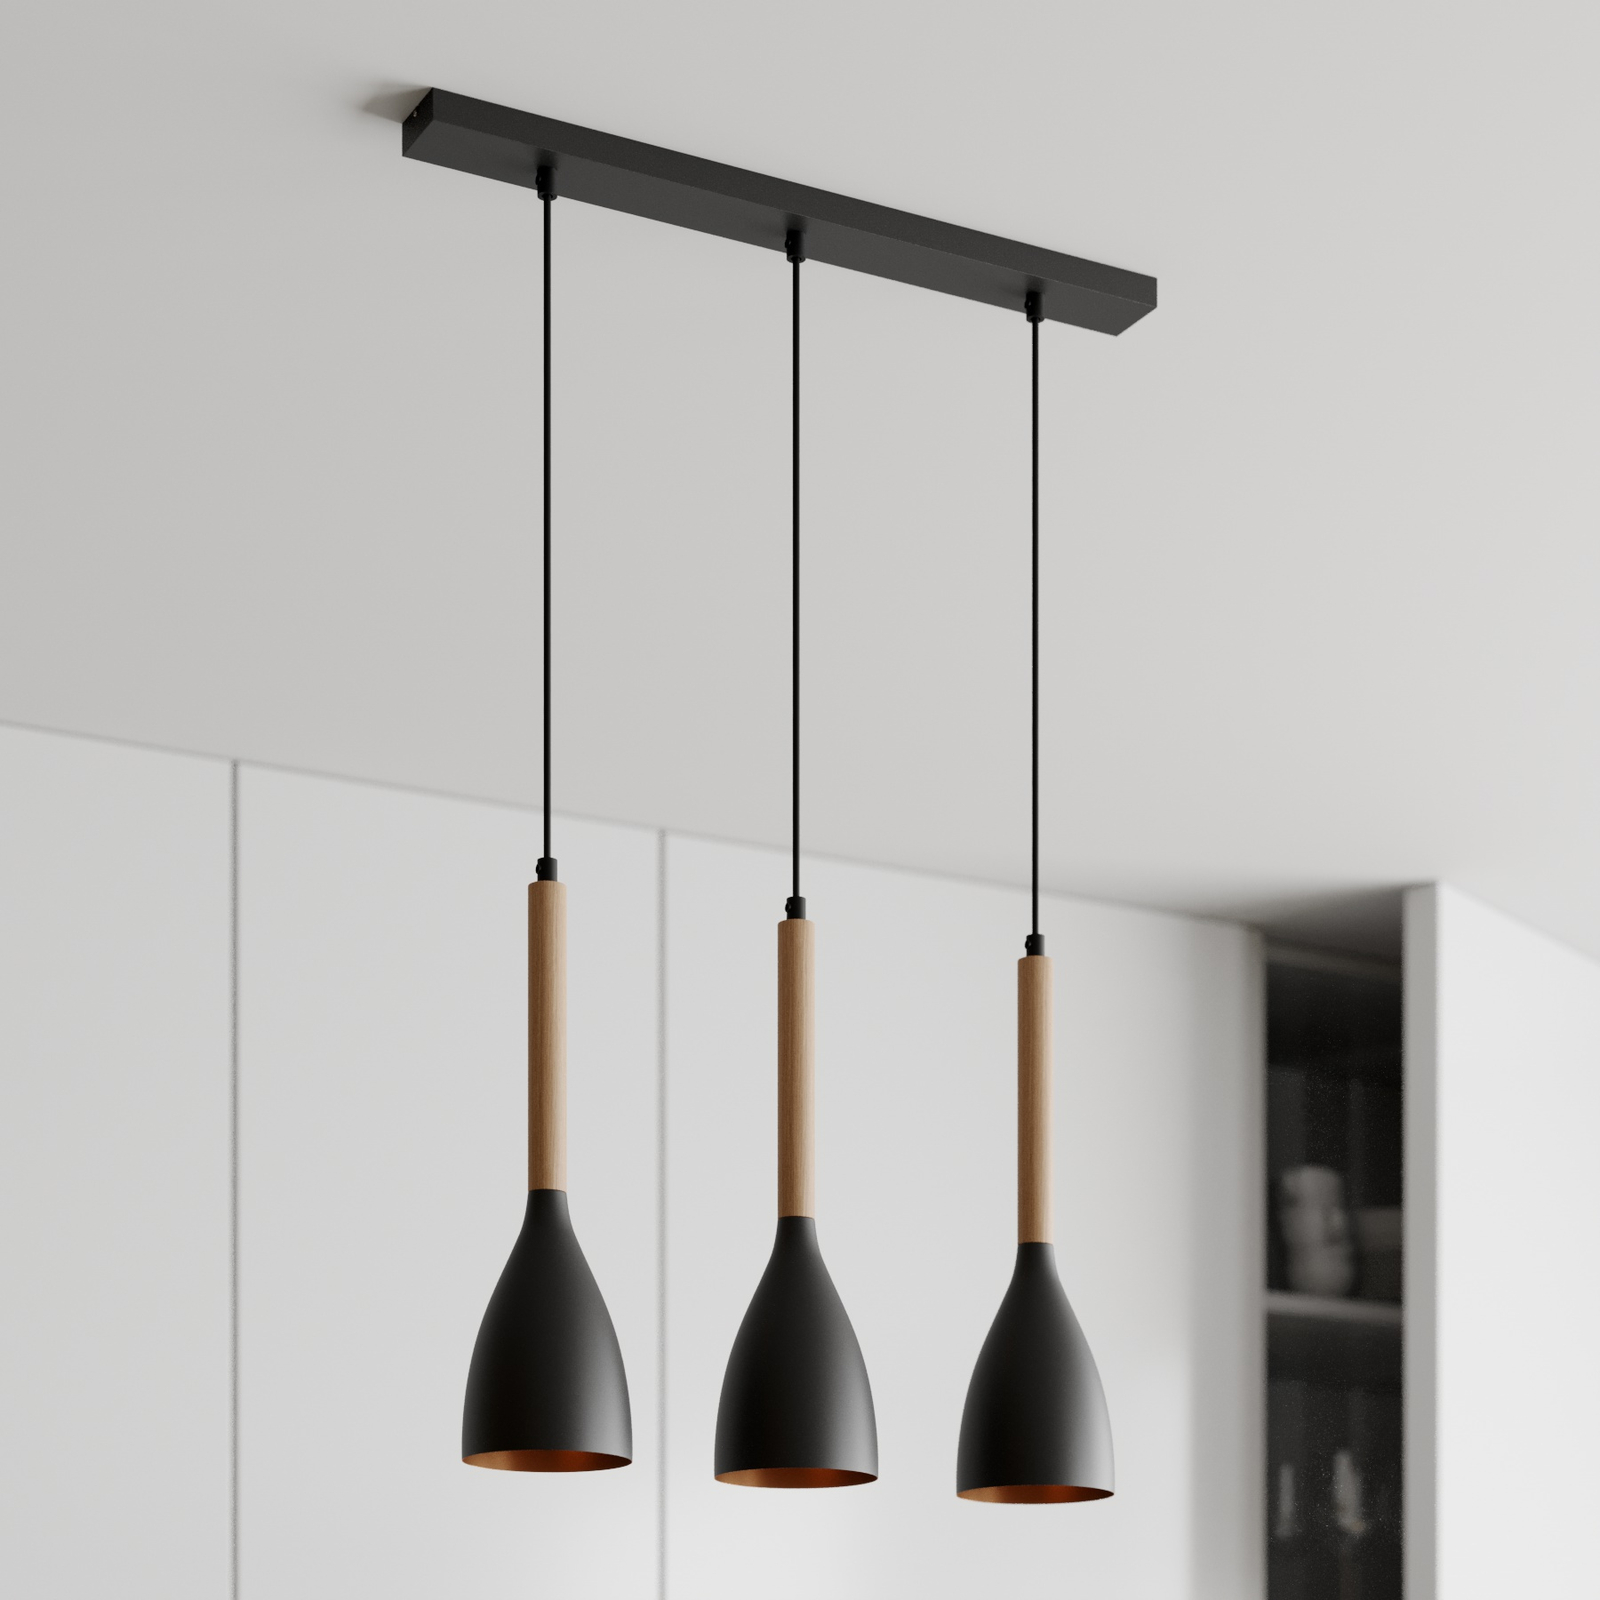 Muza 3-bulb pendant light long black/light wood